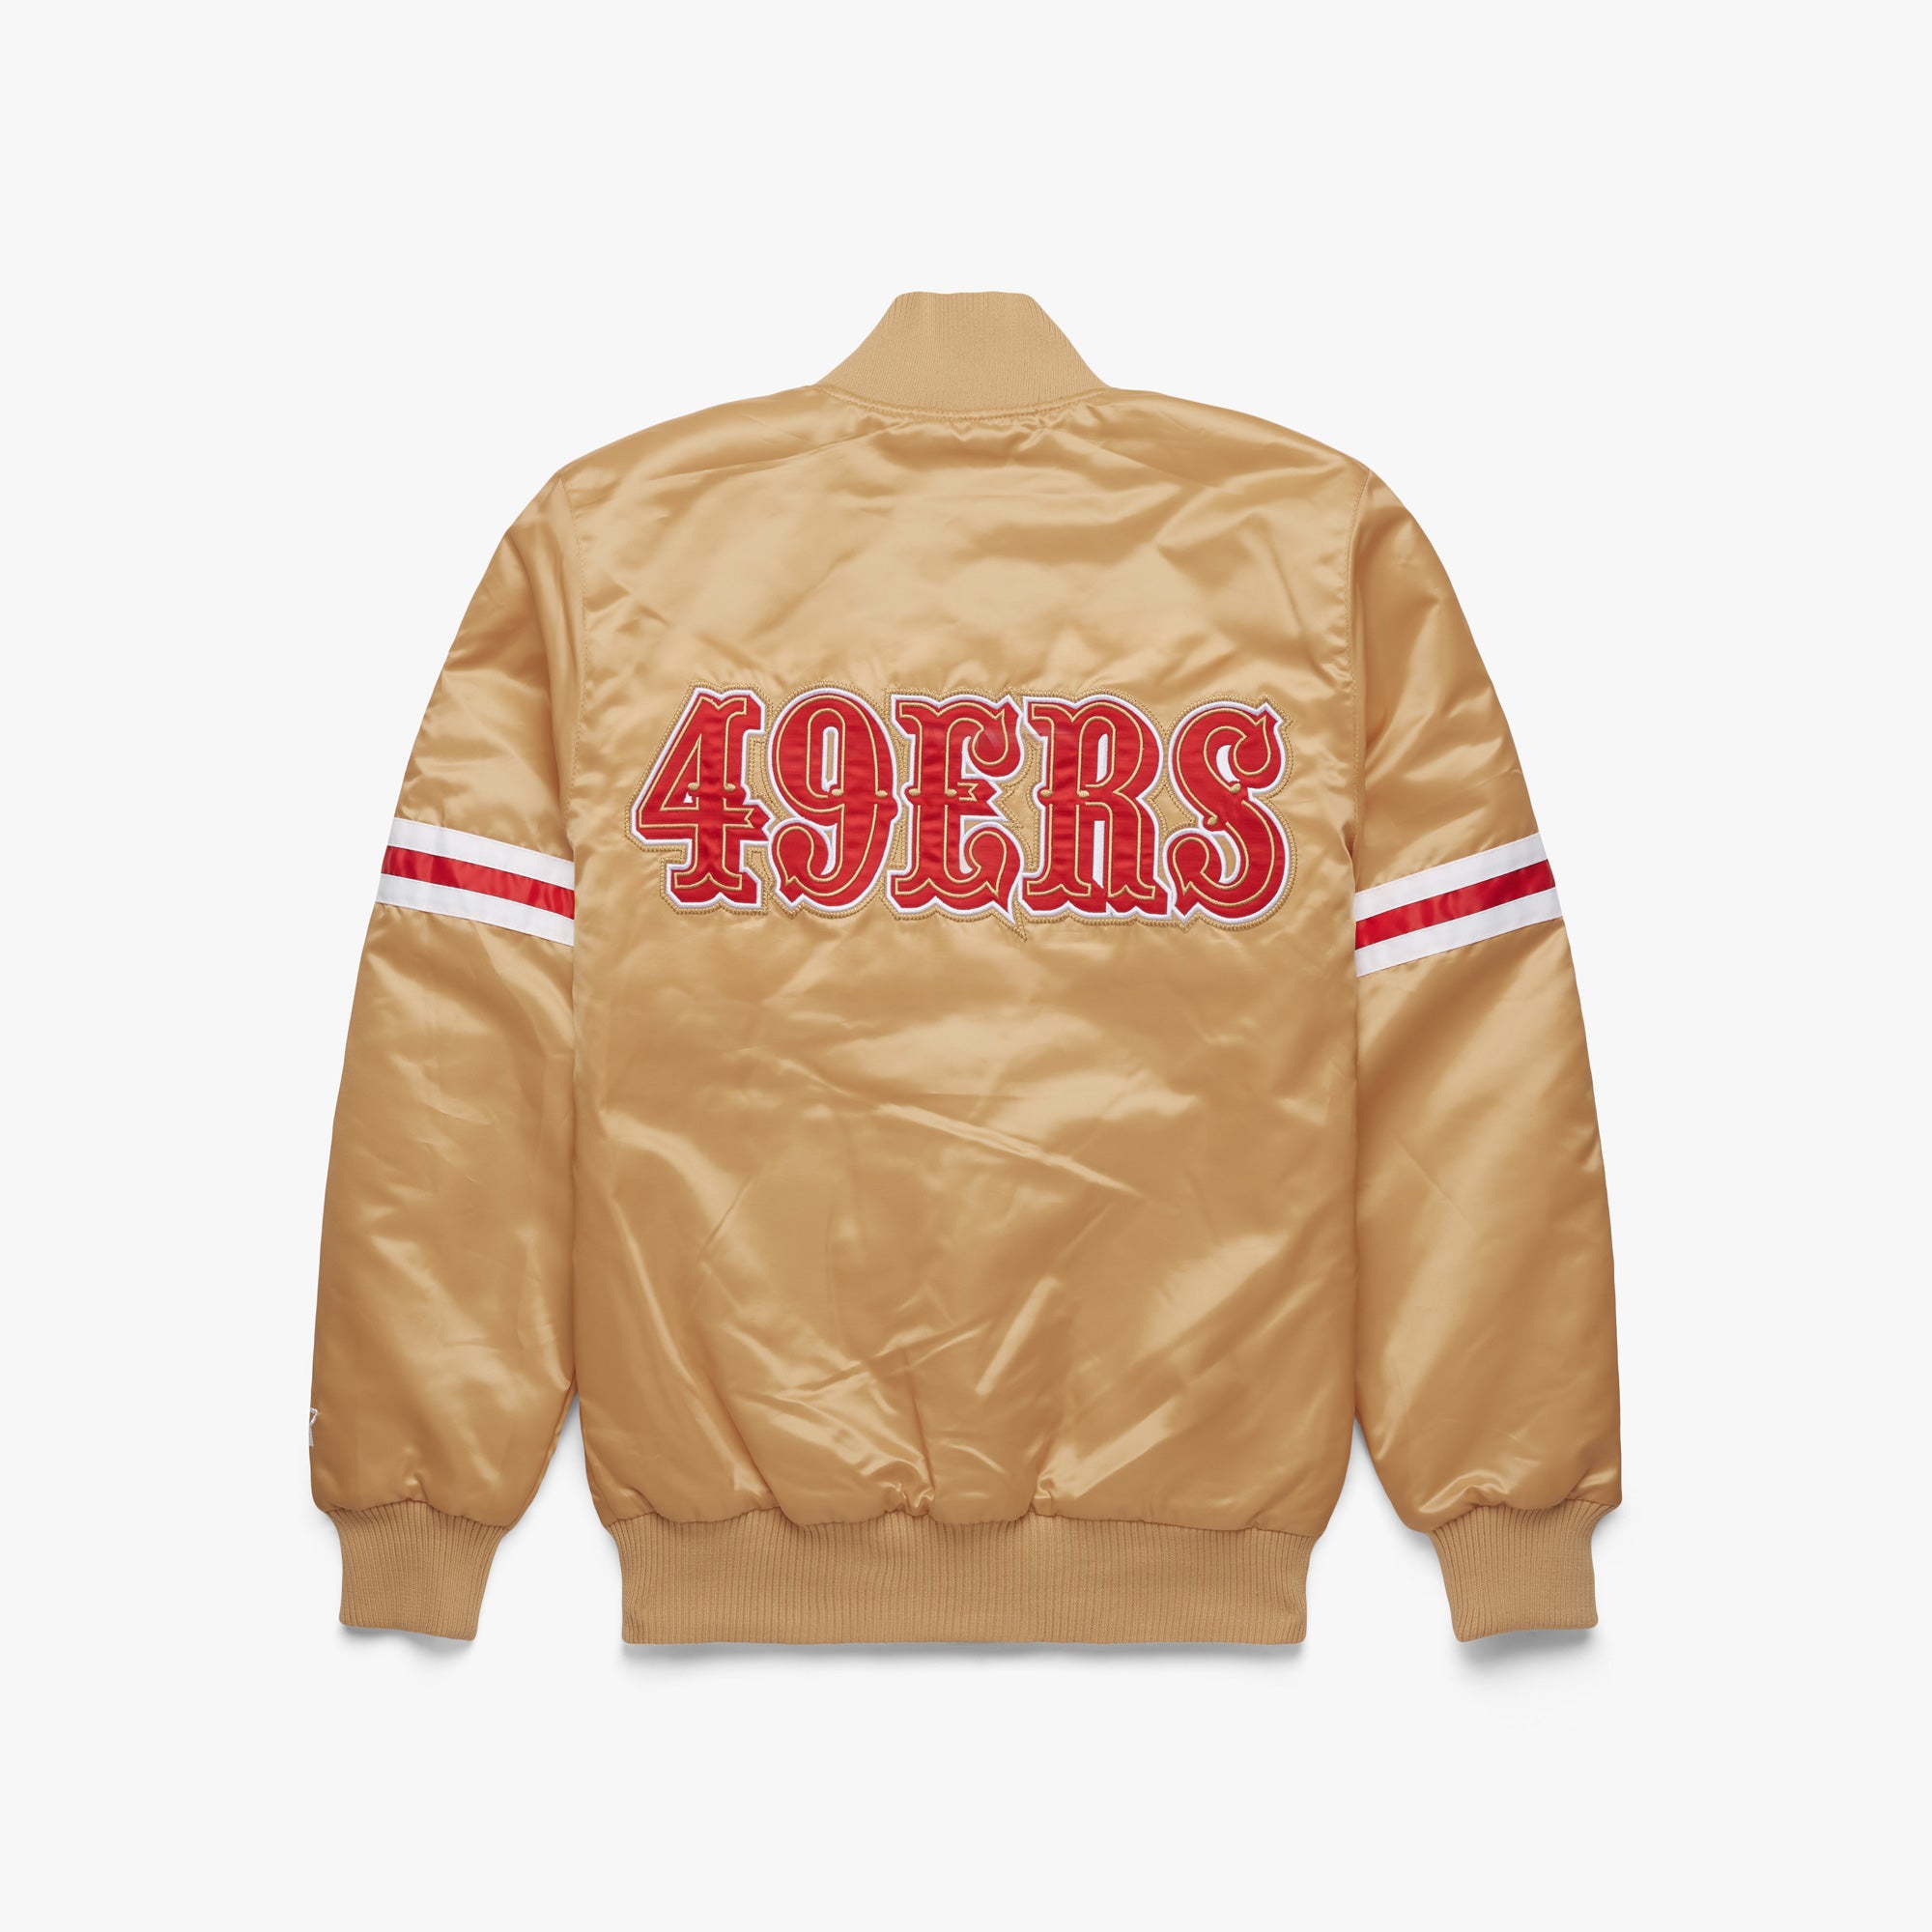 NFL Starter San Francisco 49ers Jacket